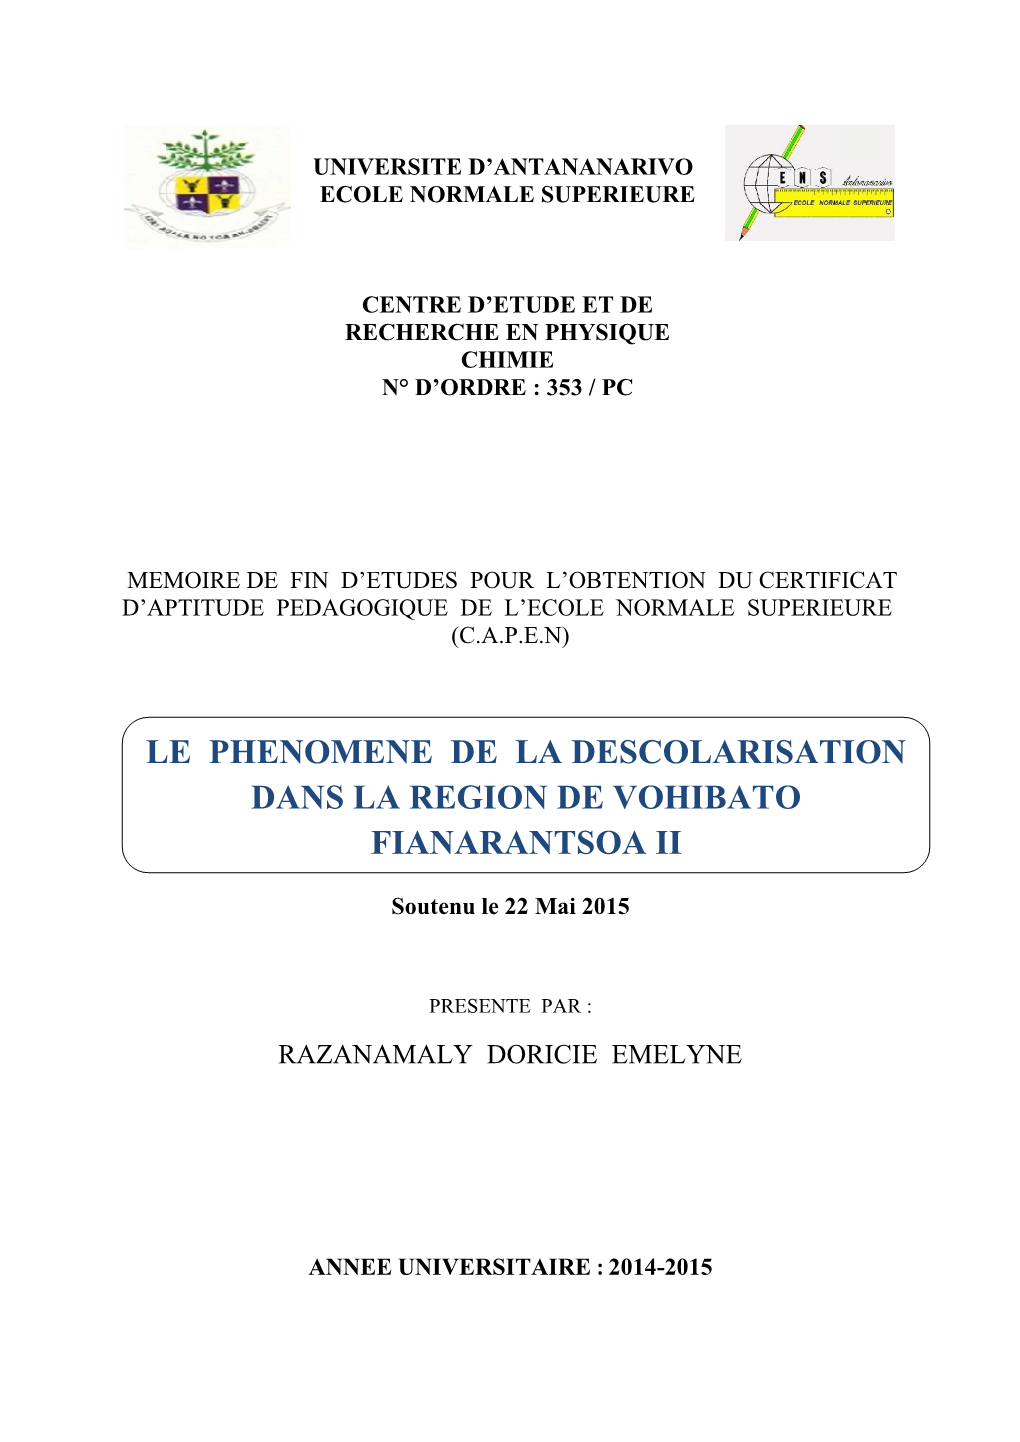 Le Phenomene De La Descolarisation Dans La Region De Vohibato Fianarantsoa Ii